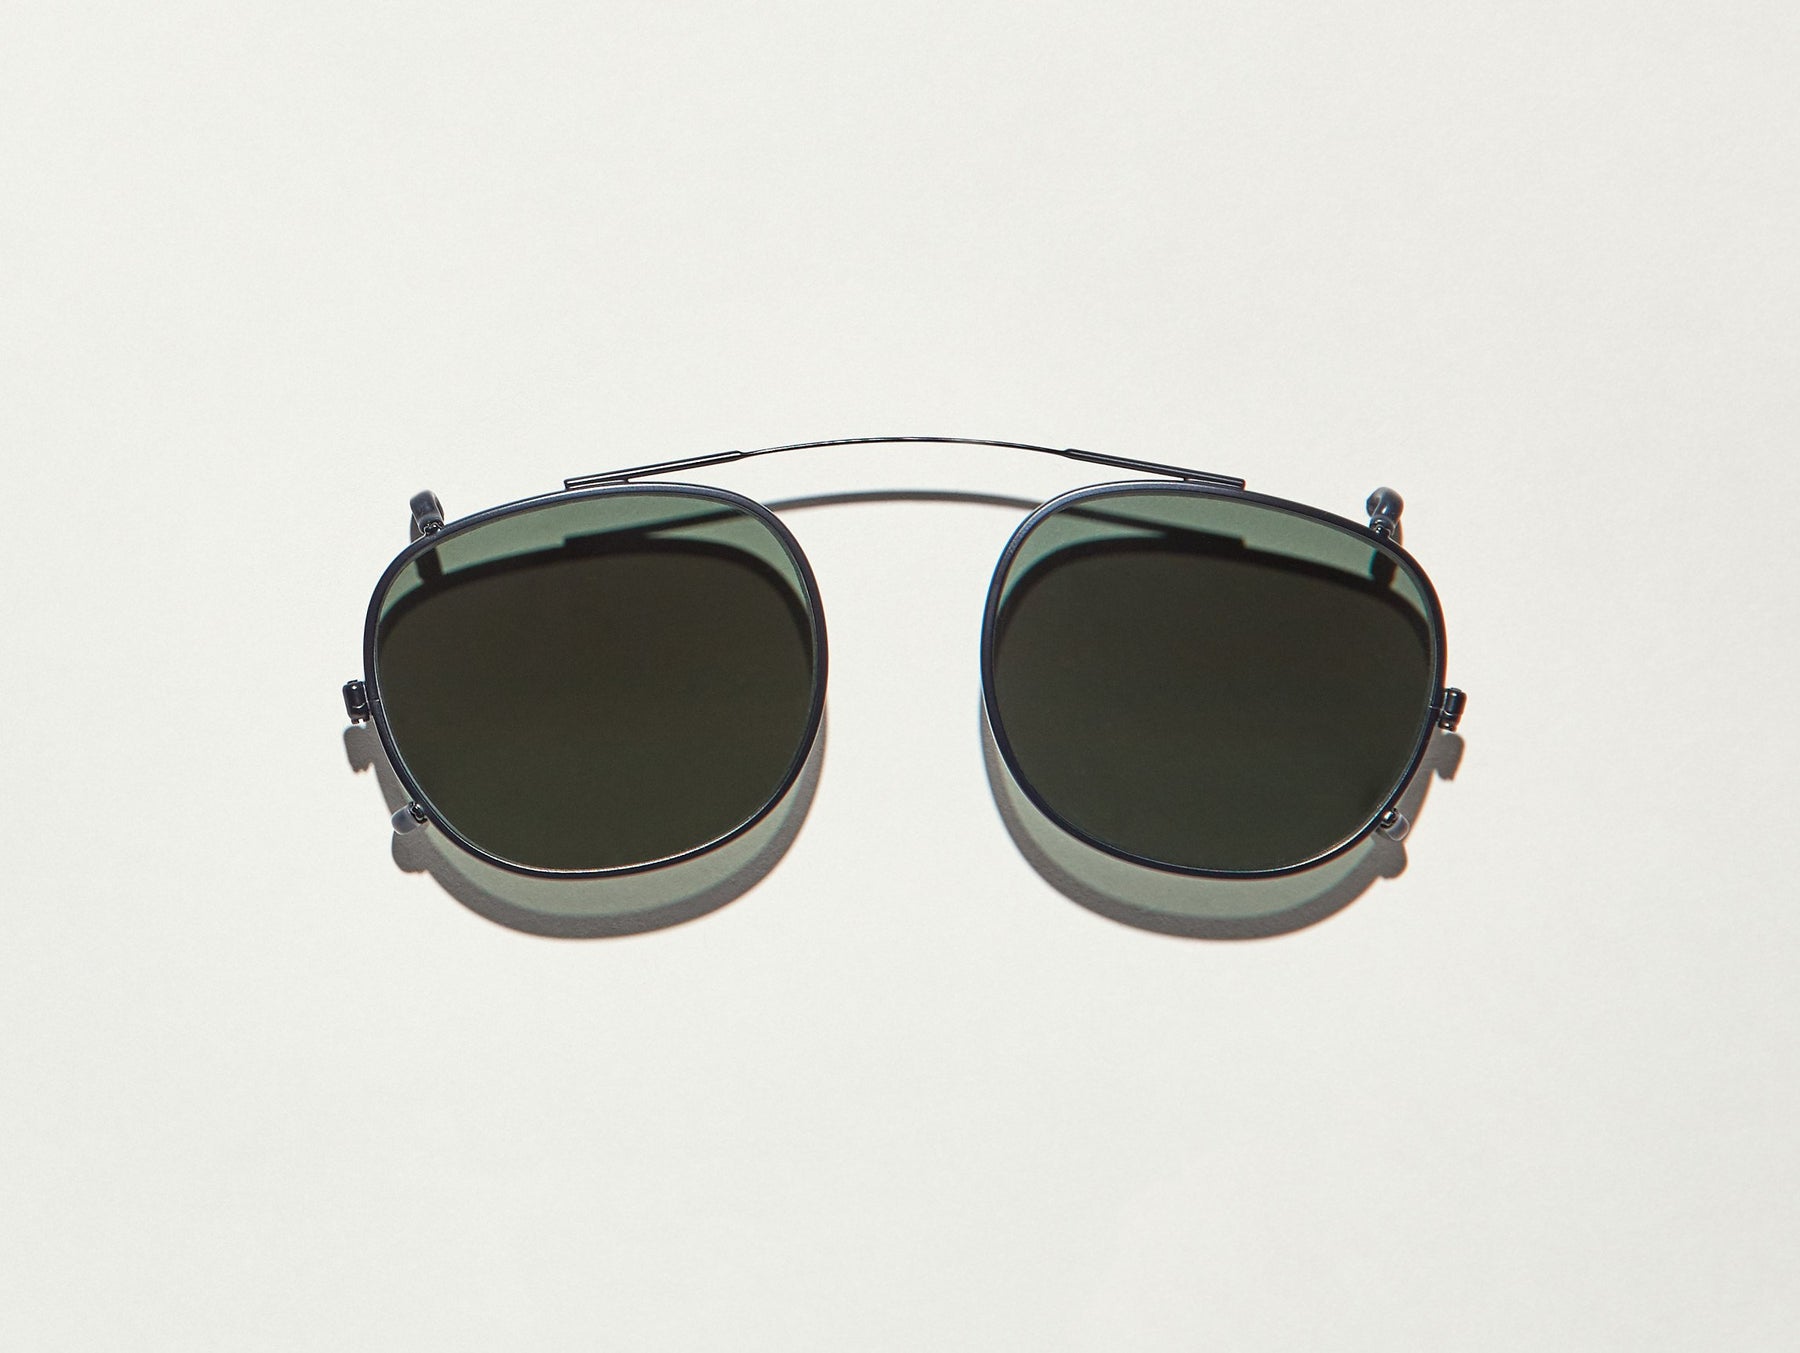 CLIPTOSH Clip-on Sunglasses